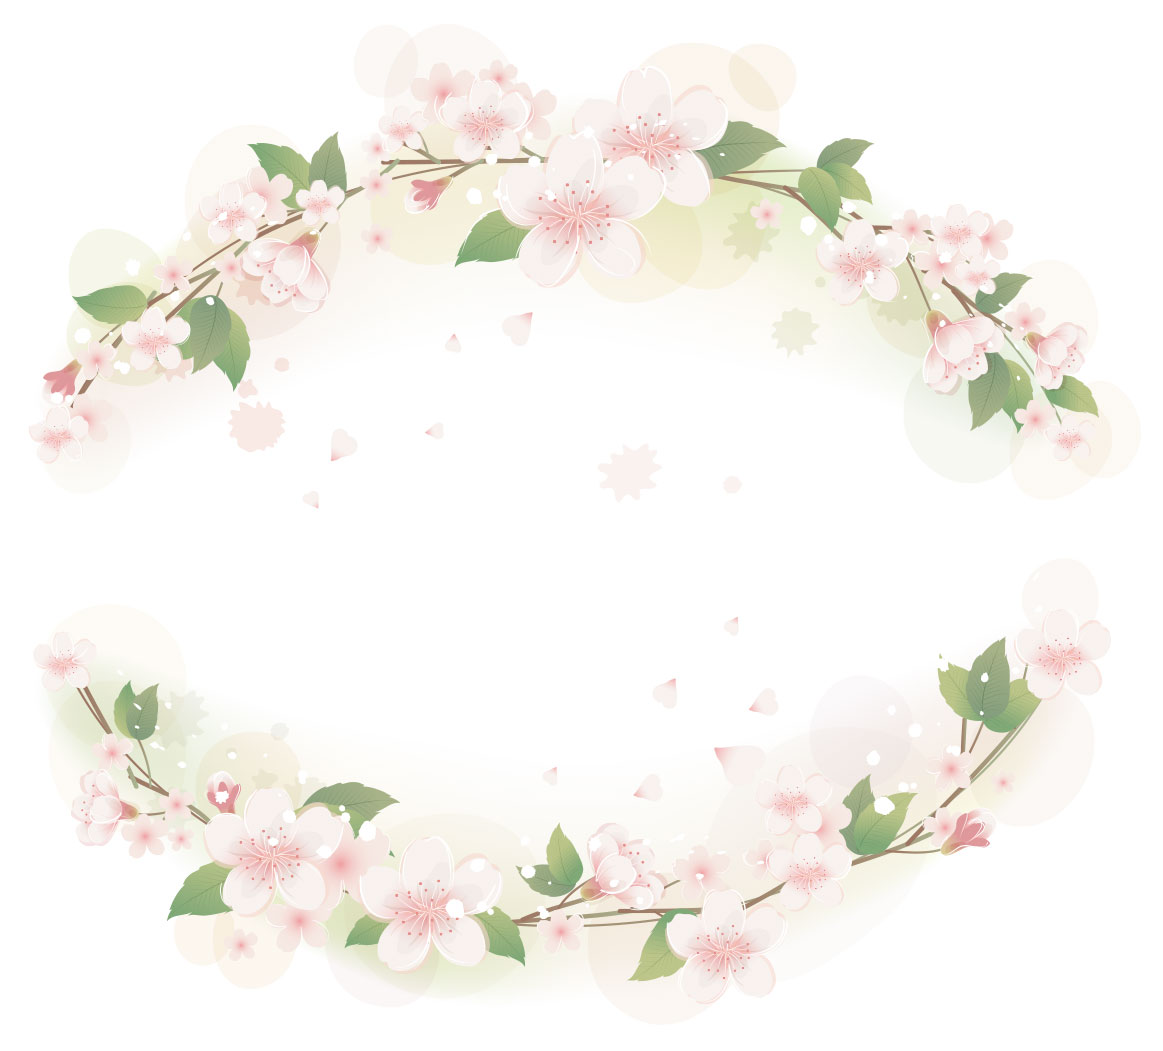 さくら 桜 のイラスト 画像no 053 さくらのフレーム 無料のフリー素材集 百花繚乱